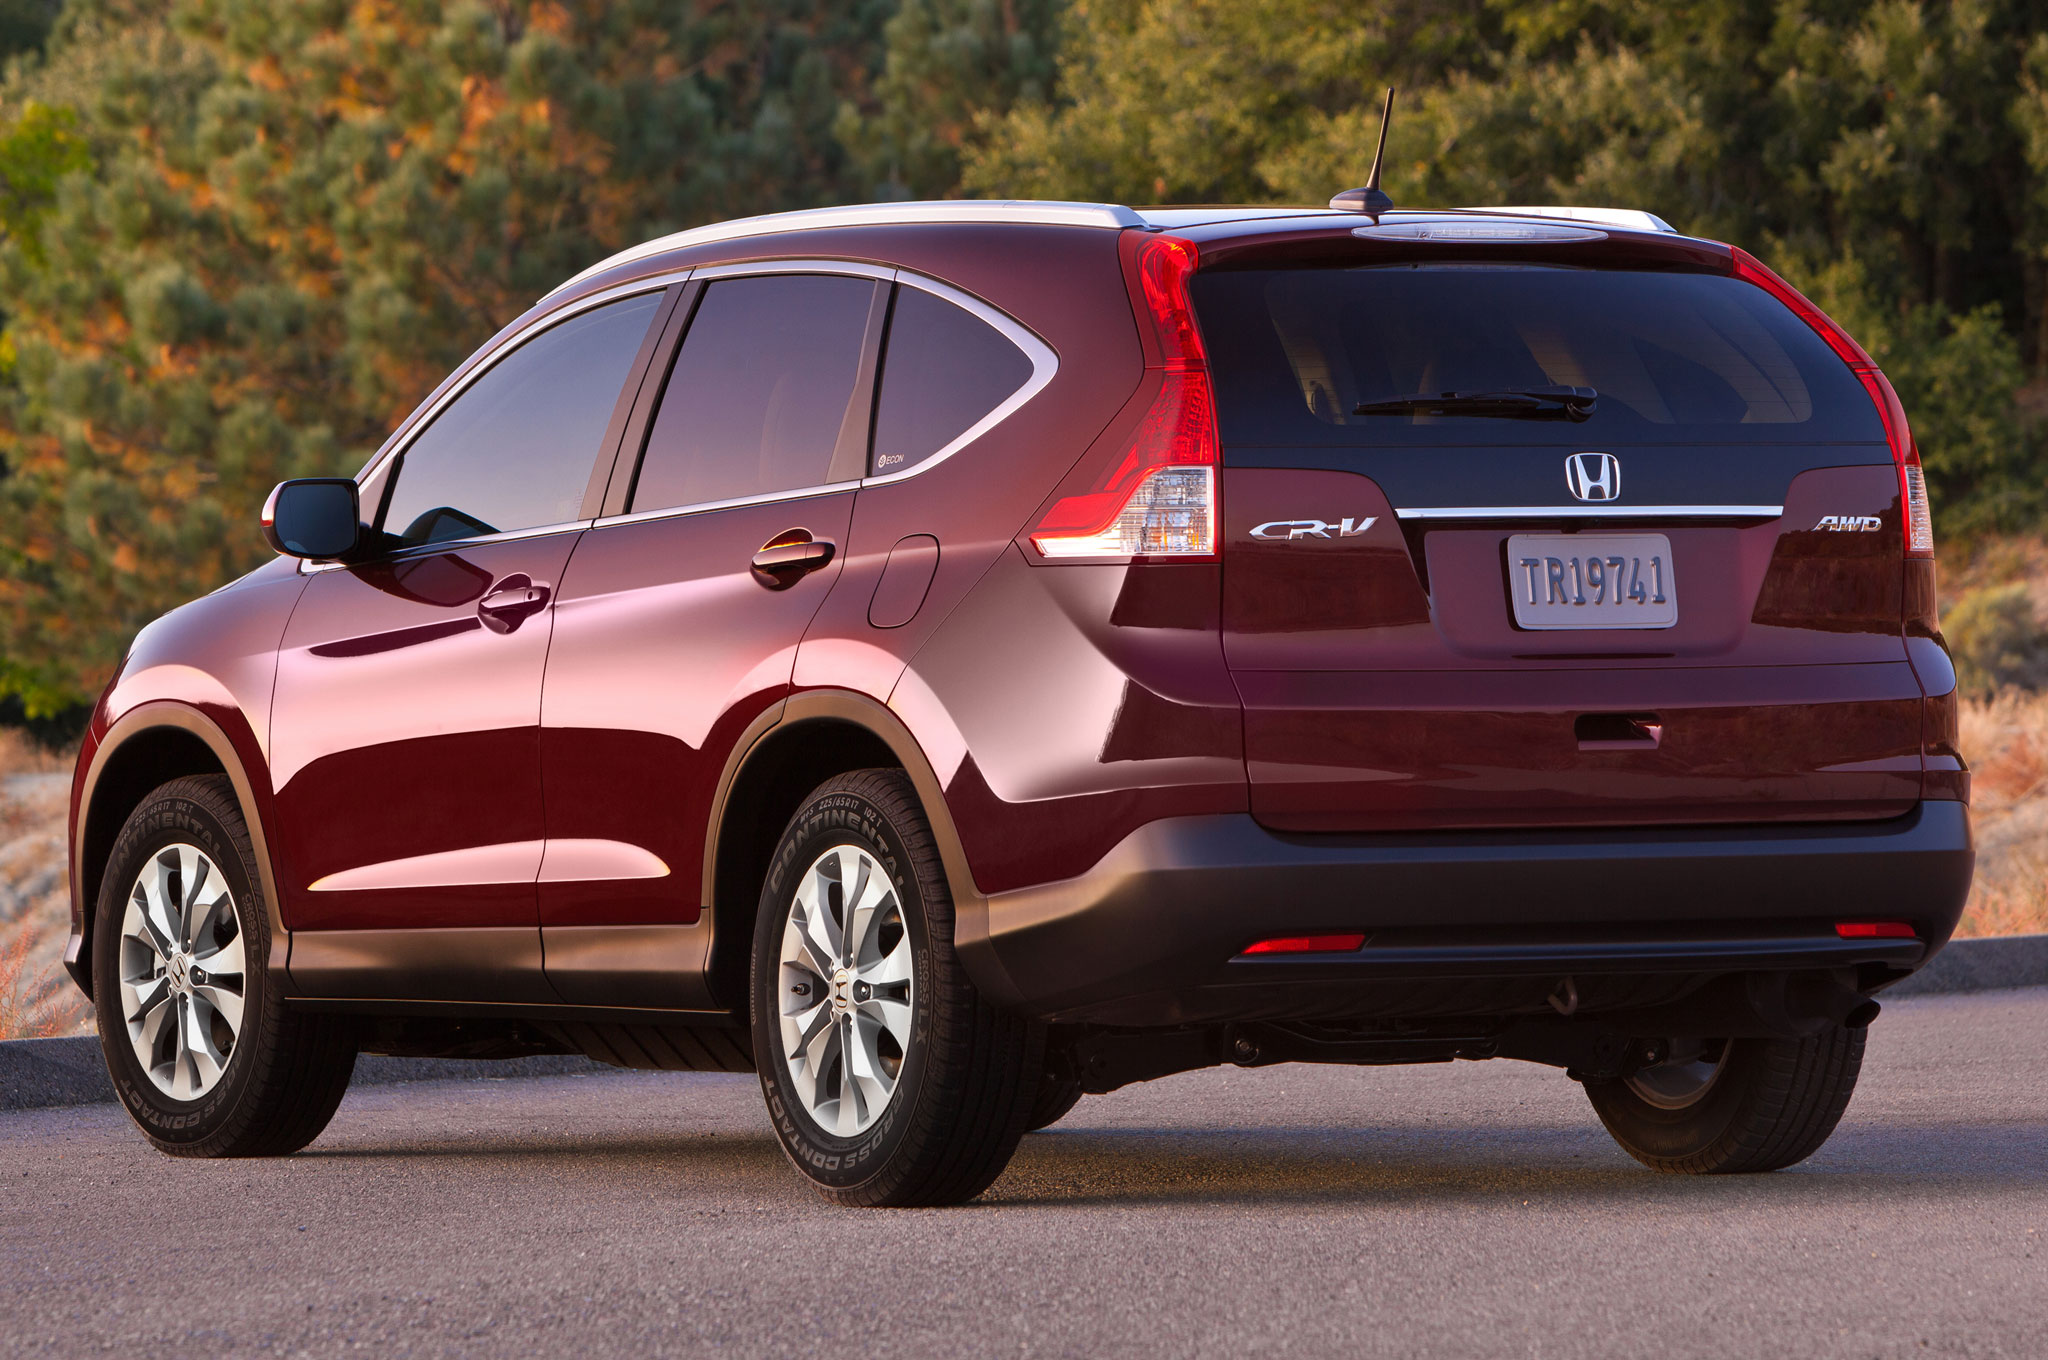 Honda CR-V 2014 đã được chứng minh là một trong những chiếc xe an toàn nhất khi so sánh xe ô tô trong phân khúc crossover